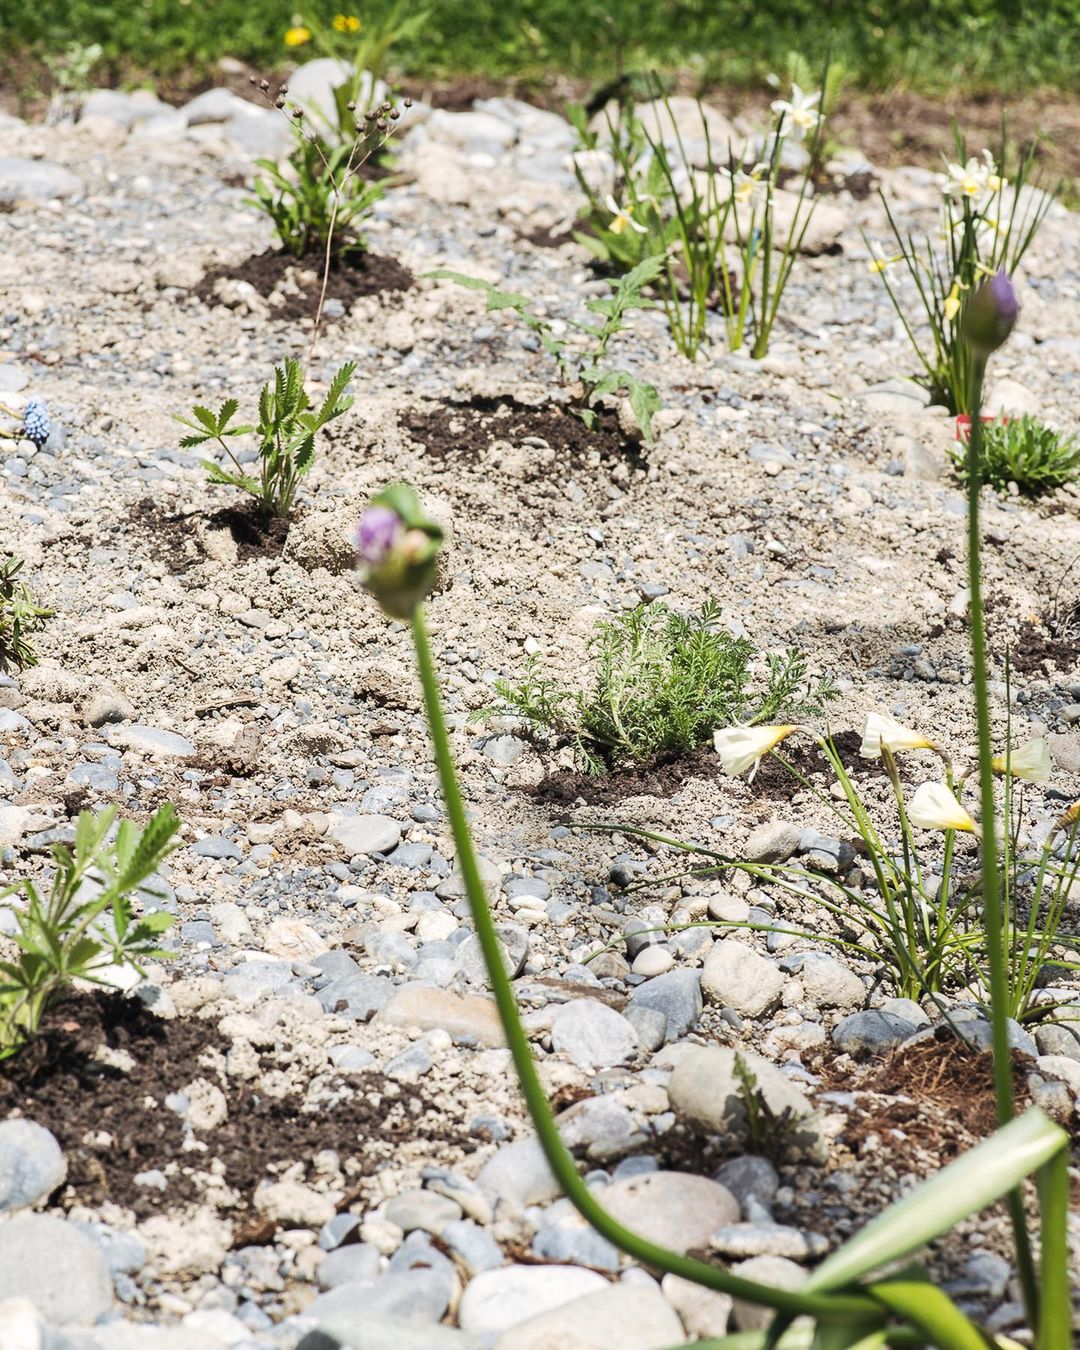 Heute haben wir den ersten Teil des Kies/Staudenbeetes bepflanzt :) 
.
Bisher sind folgende Planzen drin:
- Kaukasus Gamander 
- Wiesenflockenblume 
- Feldwitwenblume 
- Färberkamille 
- Ginster Leinkraut 
- graue Kratzdistel 
- Kugeldistel 
- Rainfarn 
- Wermut 
- Nesselblättrige Glockenblume 
- Aufrechtes Fingerkraut
- Flachblatt Mannstreu 
- Taubenskabiose 
.
#nachbarschaftsgarten #urbangardening #garten #gemeinschaftsgarten #zürichcity #seebach #urbanesgärtnern #städtischergarten #nachhaltigegärten #wildstauden 
#kiesbeet #präriegarten #bienenfreundlich